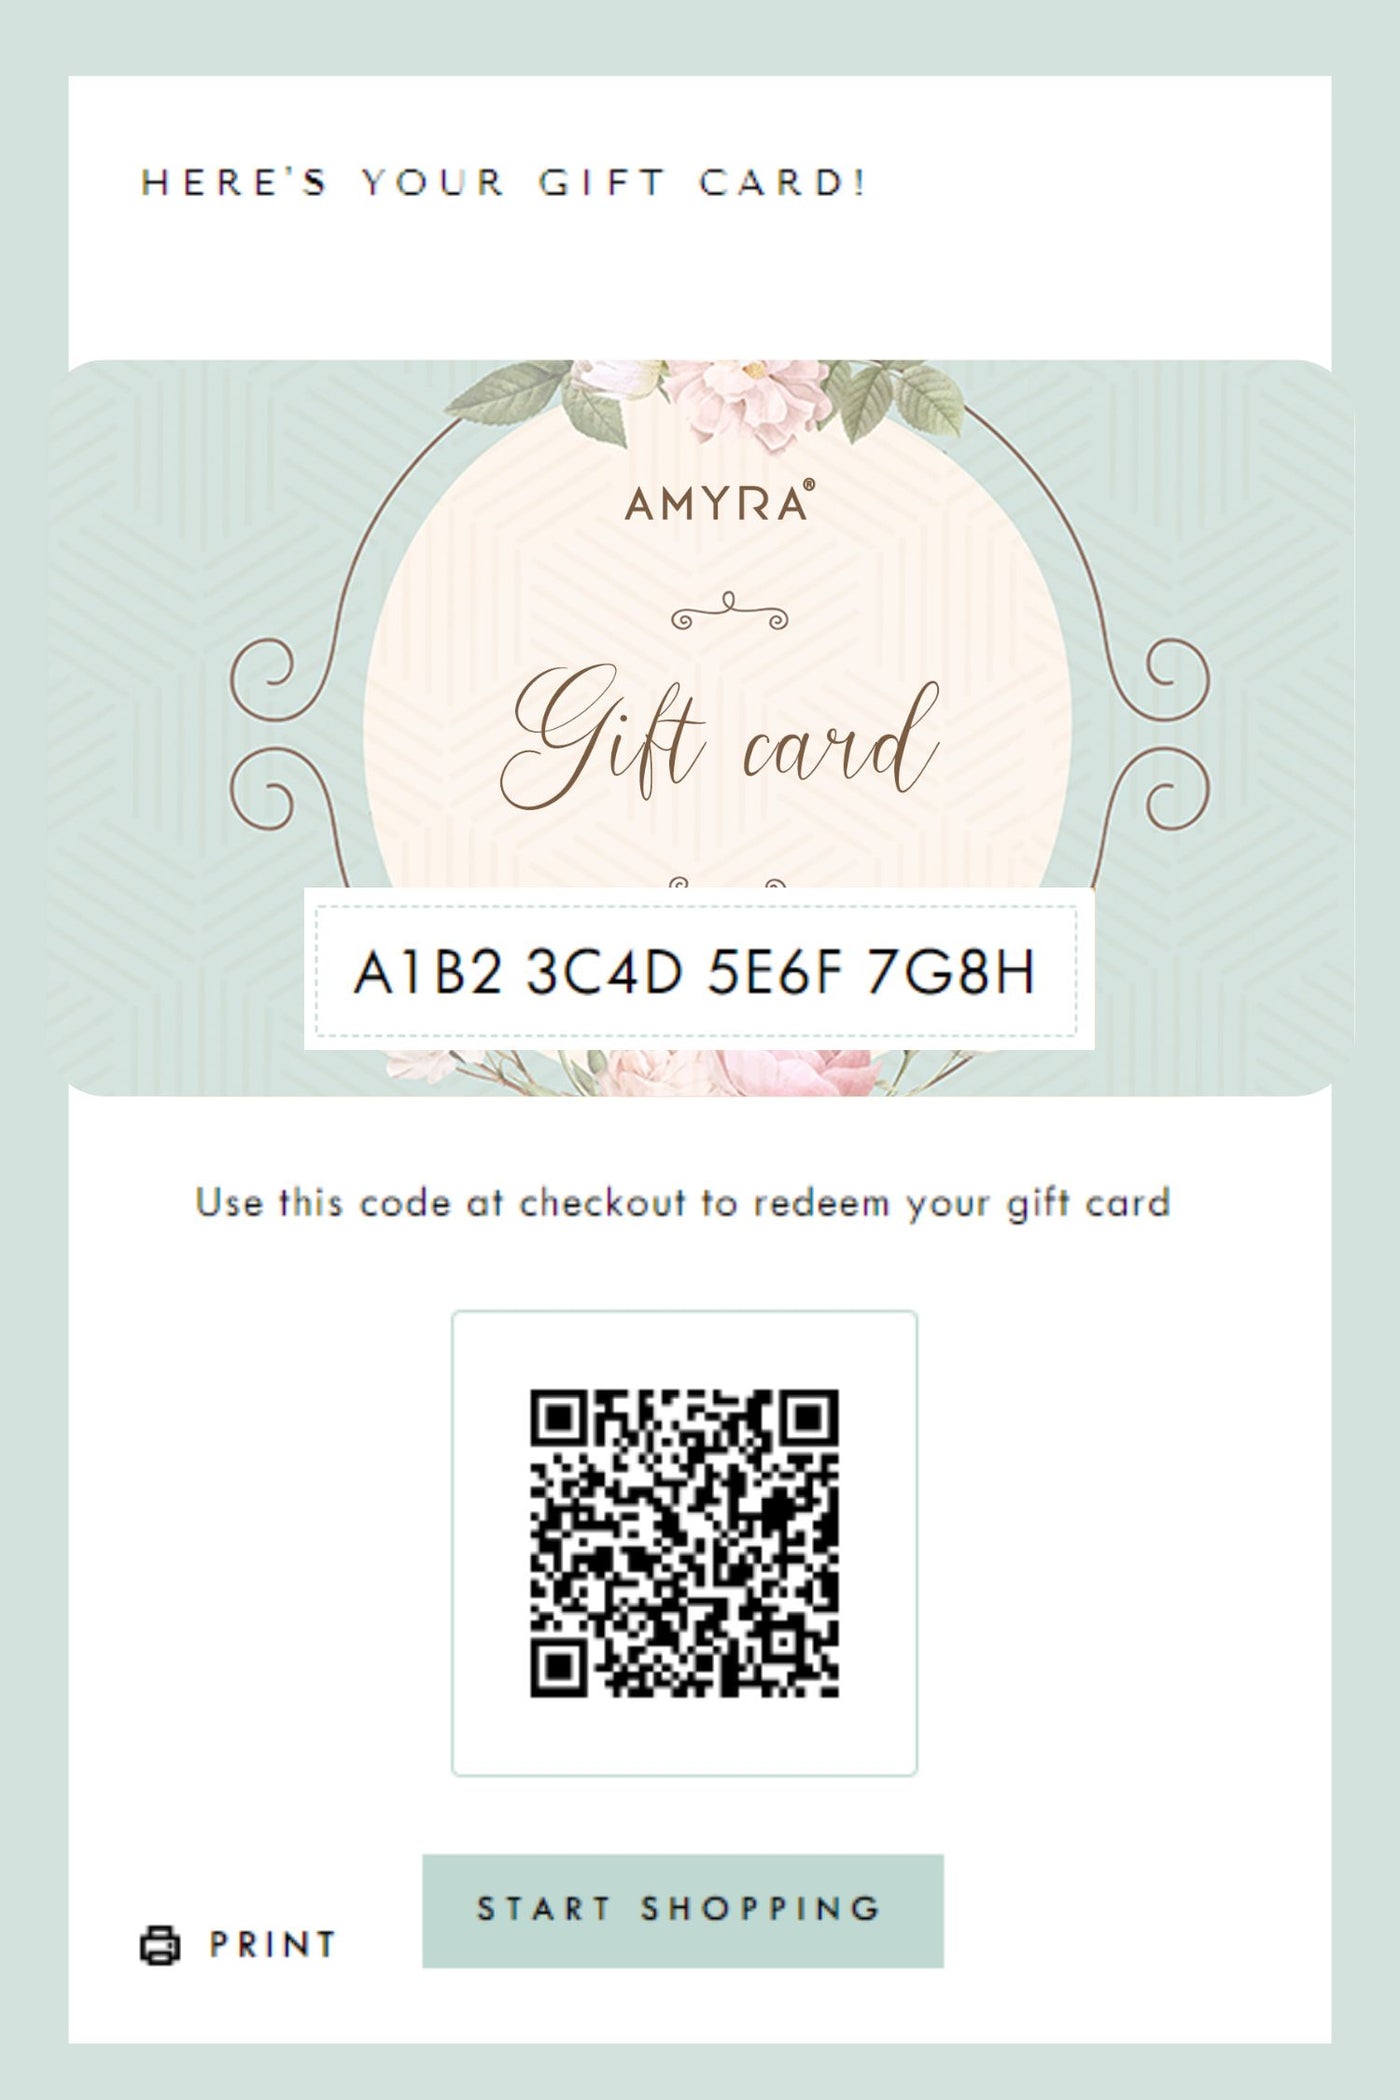 AMYRA Gift card